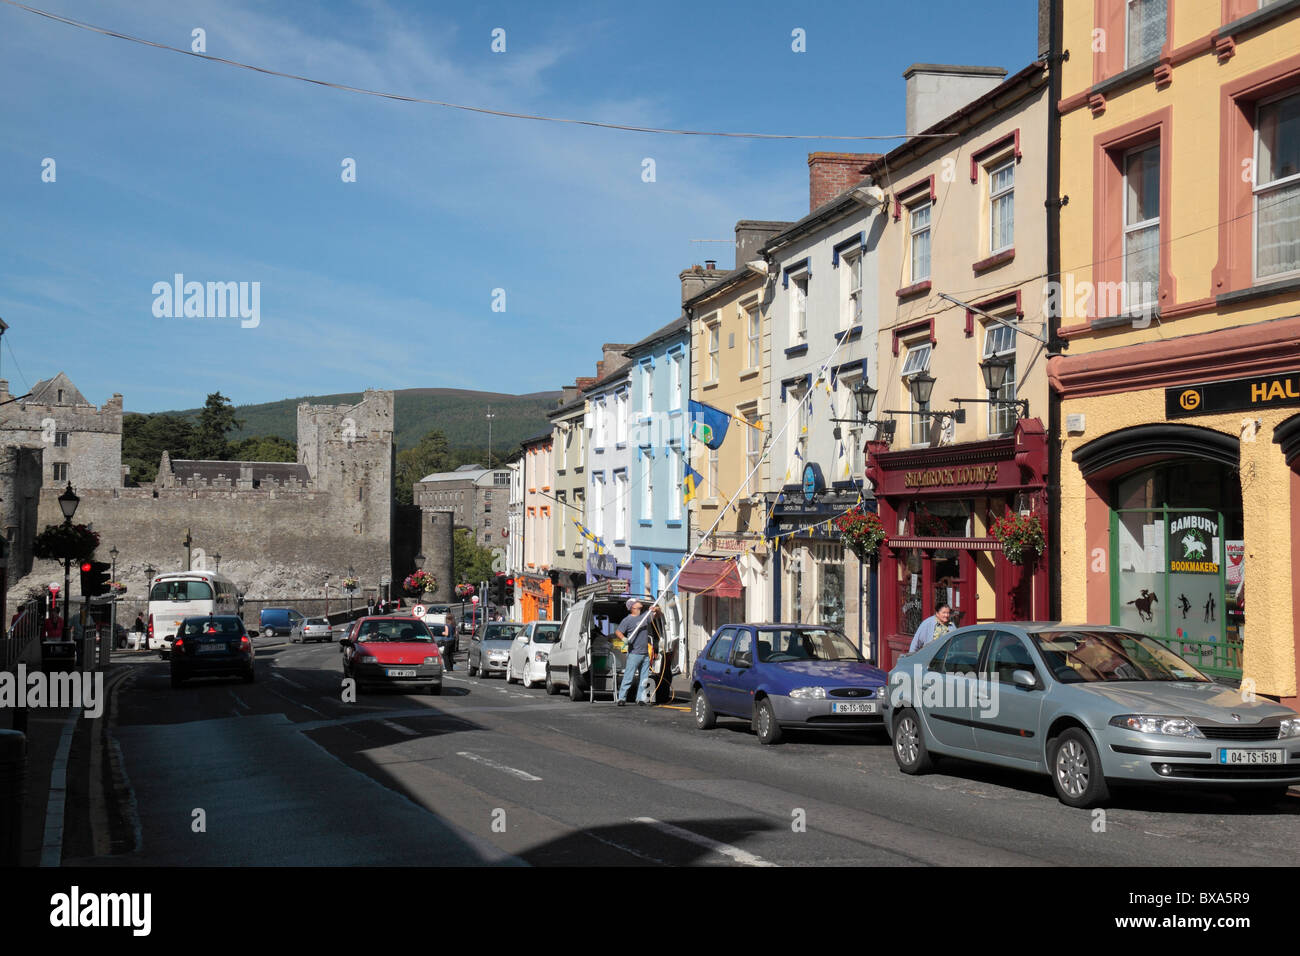 Una vista lungo una sfilata di colorati negozi sulla strada del Castello di Cahir verso il Castello di Cahir, Co Tipperary, Irlanda (Eire). Foto Stock